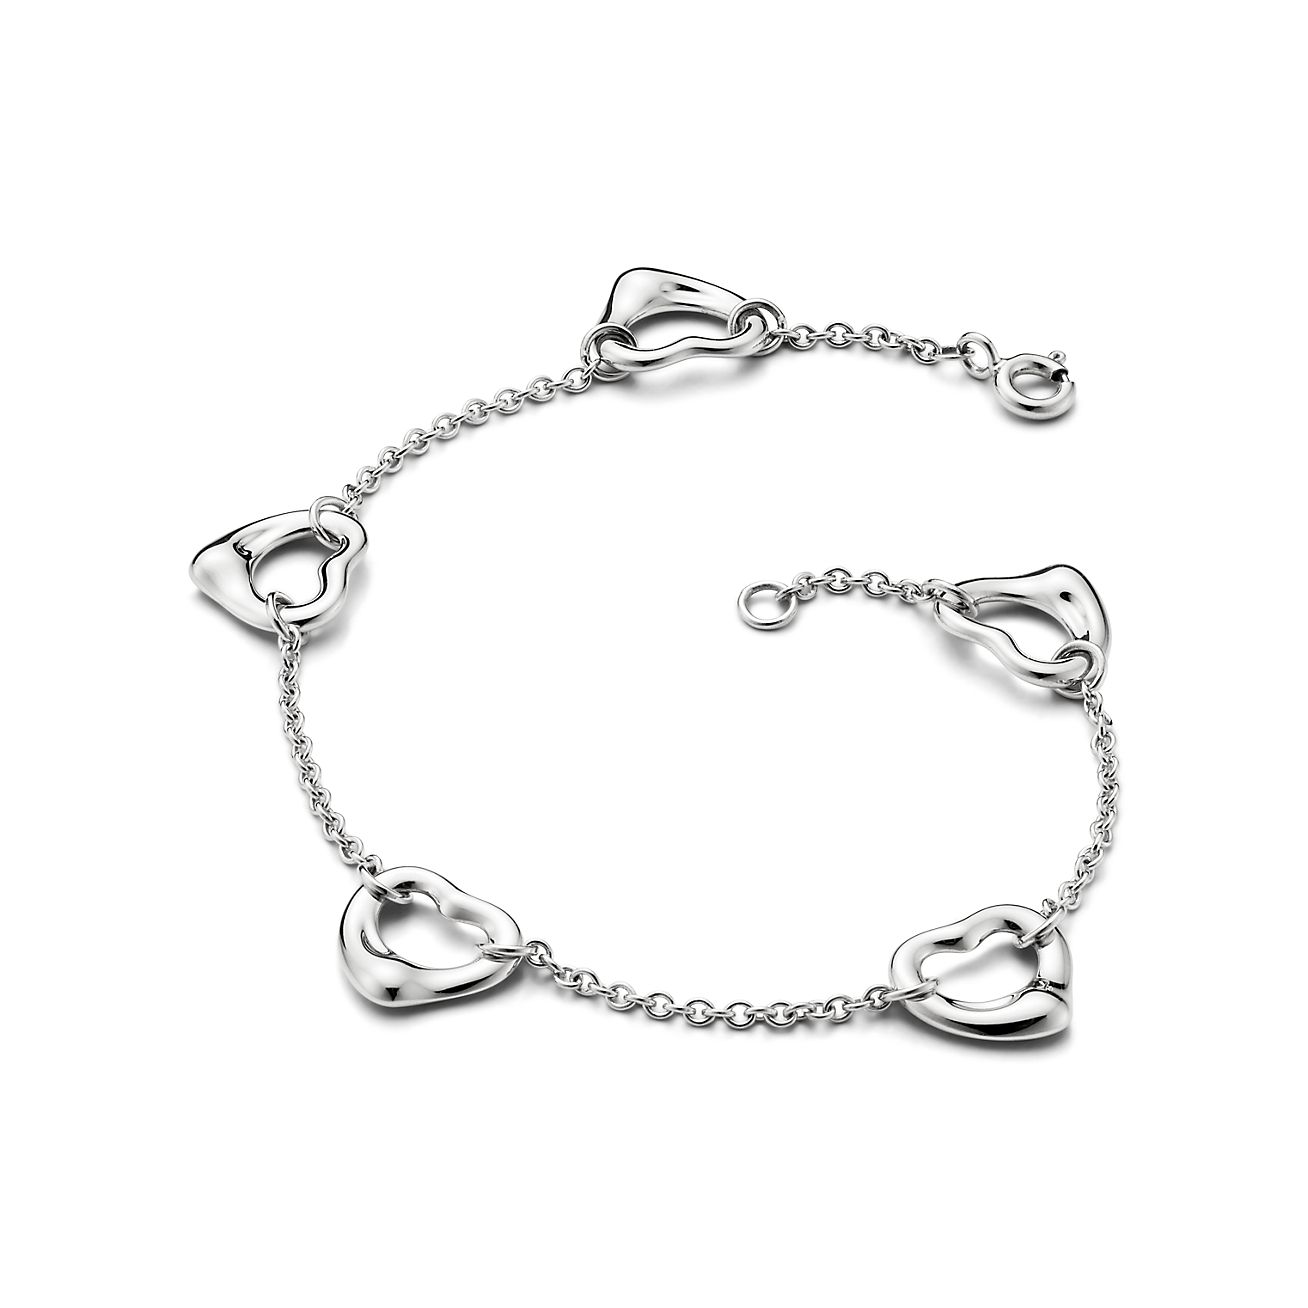 Elsa Peretti Open Heart Bracelet in Sterling Silver, Medium